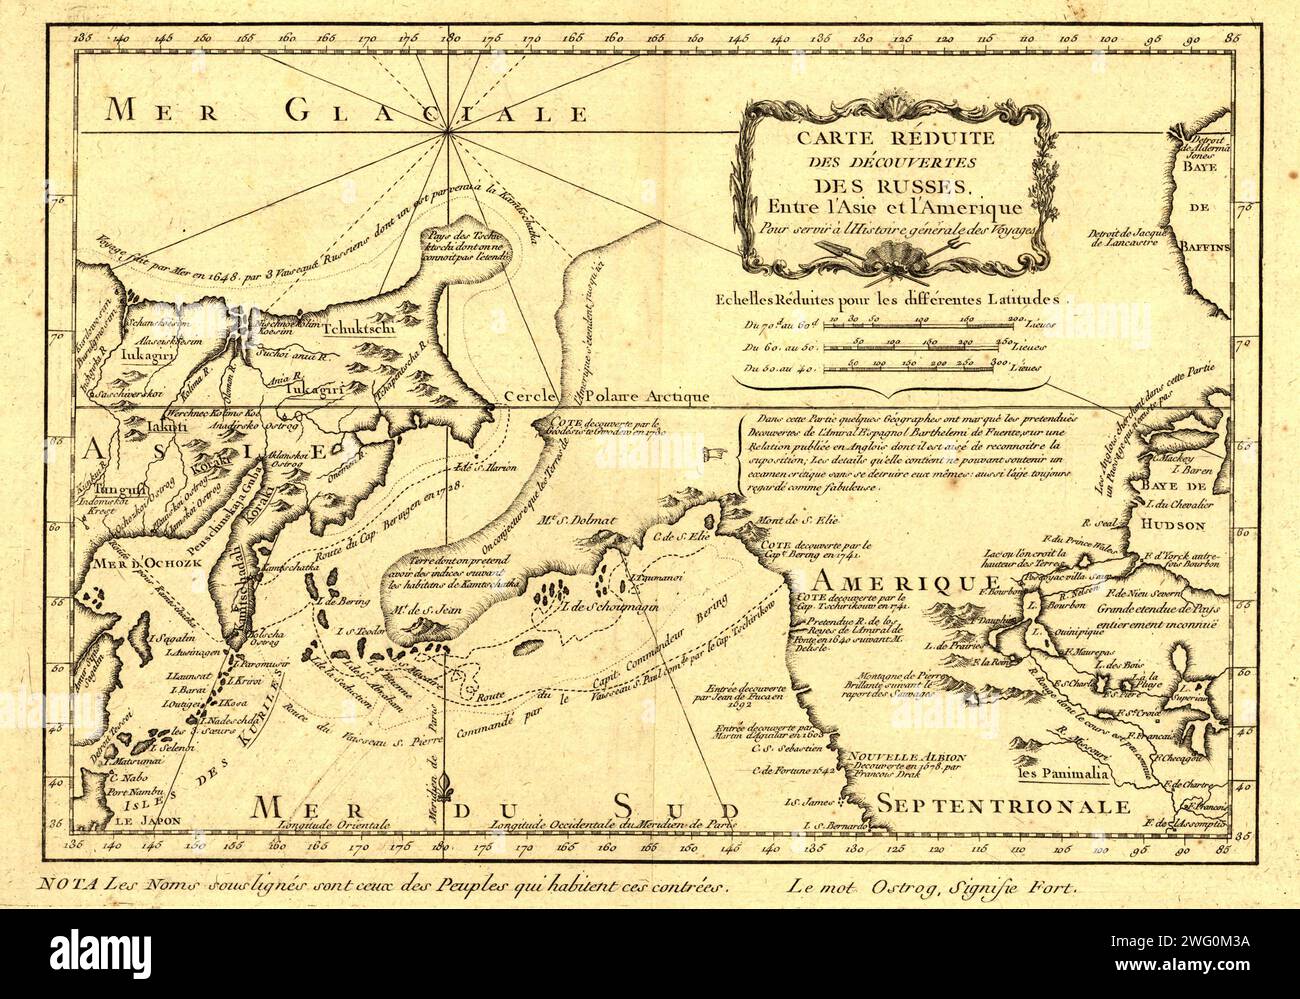 Carte re&#xb4;duite des de&#xb4;couvertes des Russes, entre l'Asie et l'Amerique, (1747?). Diese französische Karte von Alaska, Sibirien und dem Nordpazifik, die 1747 veröffentlicht wurde, basiert auf geografischen Informationen, die aus früheren russischen Reisen gewonnen wurden. Es wurde vom französischen Kartografen Jacques-Nicolas Bellin (1703–72) erstellt und vom französischen Autor Abbe&#xb4; Pre&#xb4;vost veröffentlicht. Bellin wurde zum Hydrographen ausgebildet und war dem französischen Marine Office angegliedert und spezialisierte sich auf die Erstellung von Seekarten, die Küstenlinien zeigen. 1764 veröffentlichte er Le Petit Atlas Maritime (kleiner maritimer atlas), ein Werk Stockfoto